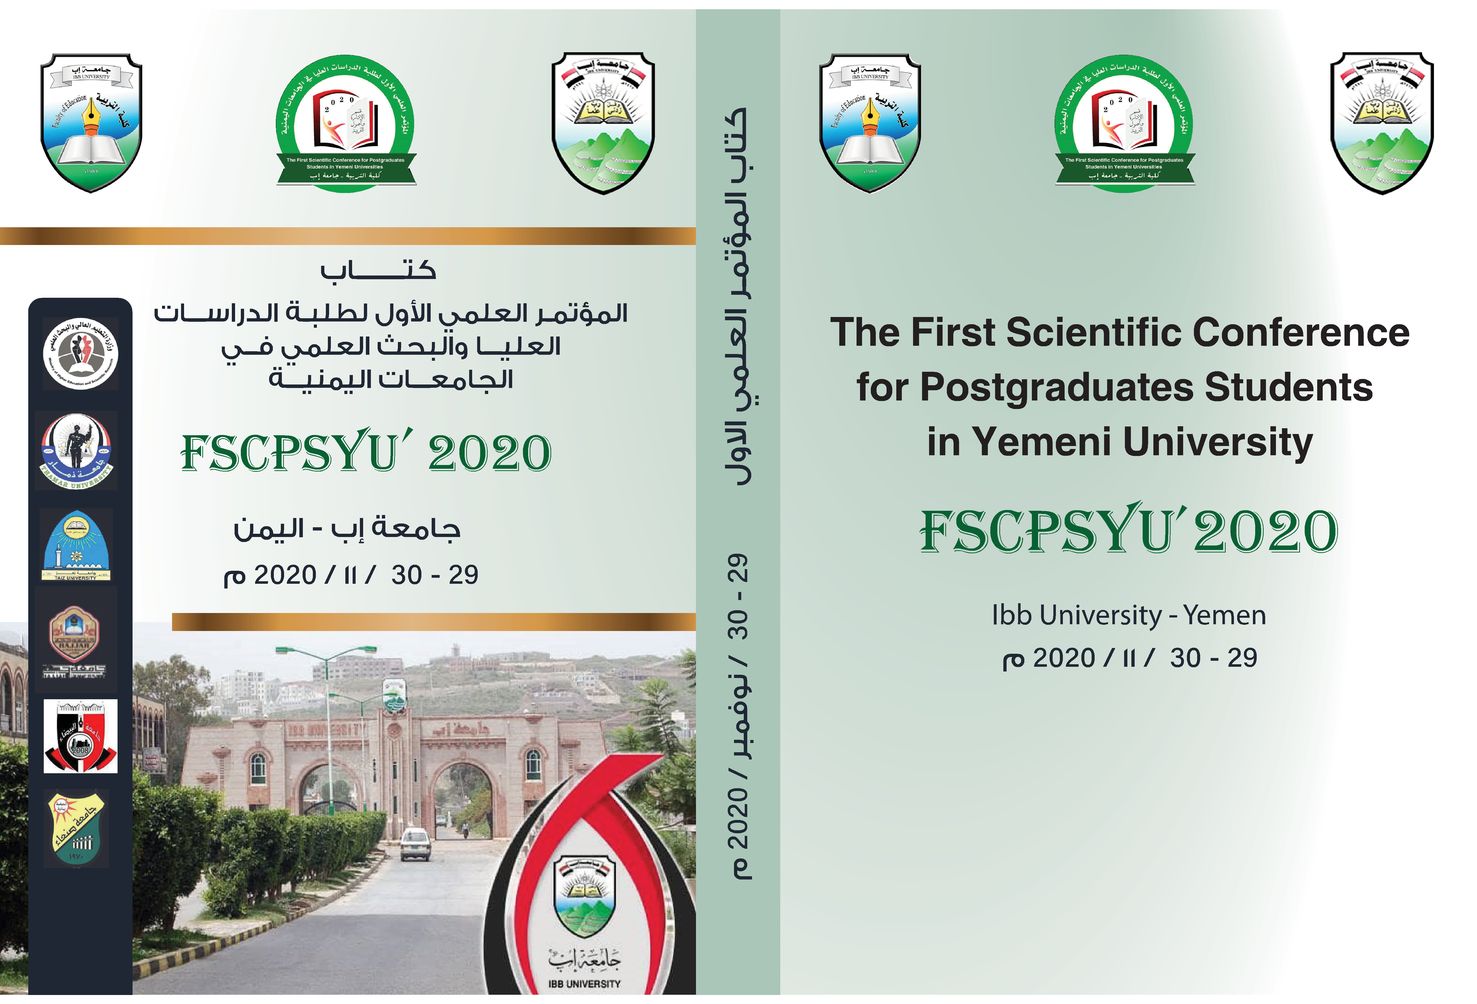 المؤتمر العلمي الأول لطلبة الدراسات العليا والبحث العلمي في الجامعات اليمنية